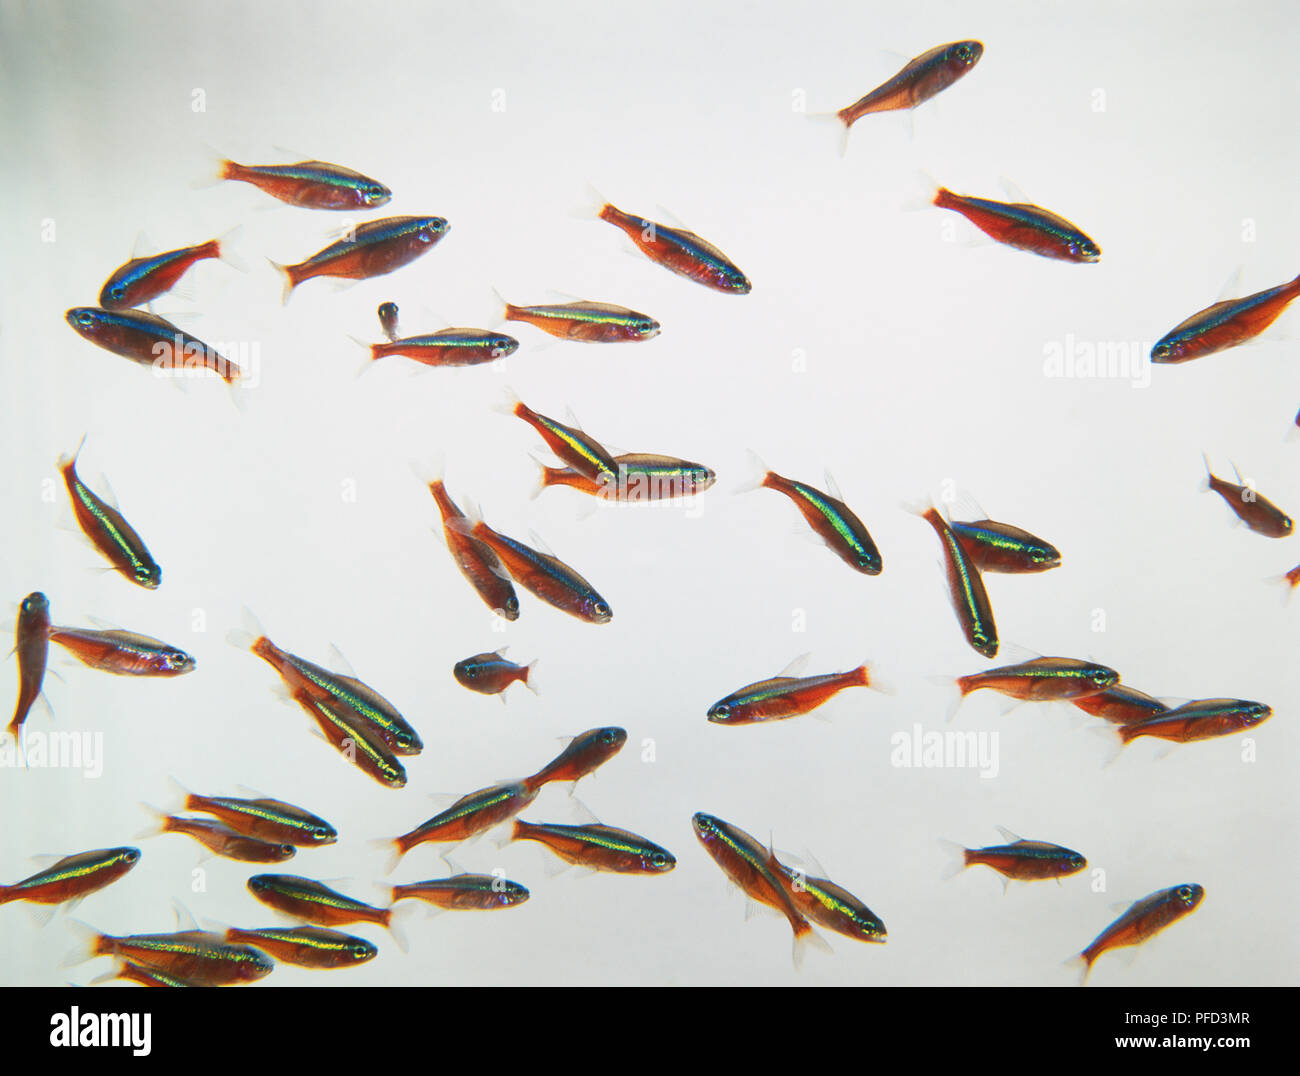 Gruppo del Cardinale Tetras (Paracheirodon axlrodi), rosso, giallo e blu a strisce pesci. Foto Stock